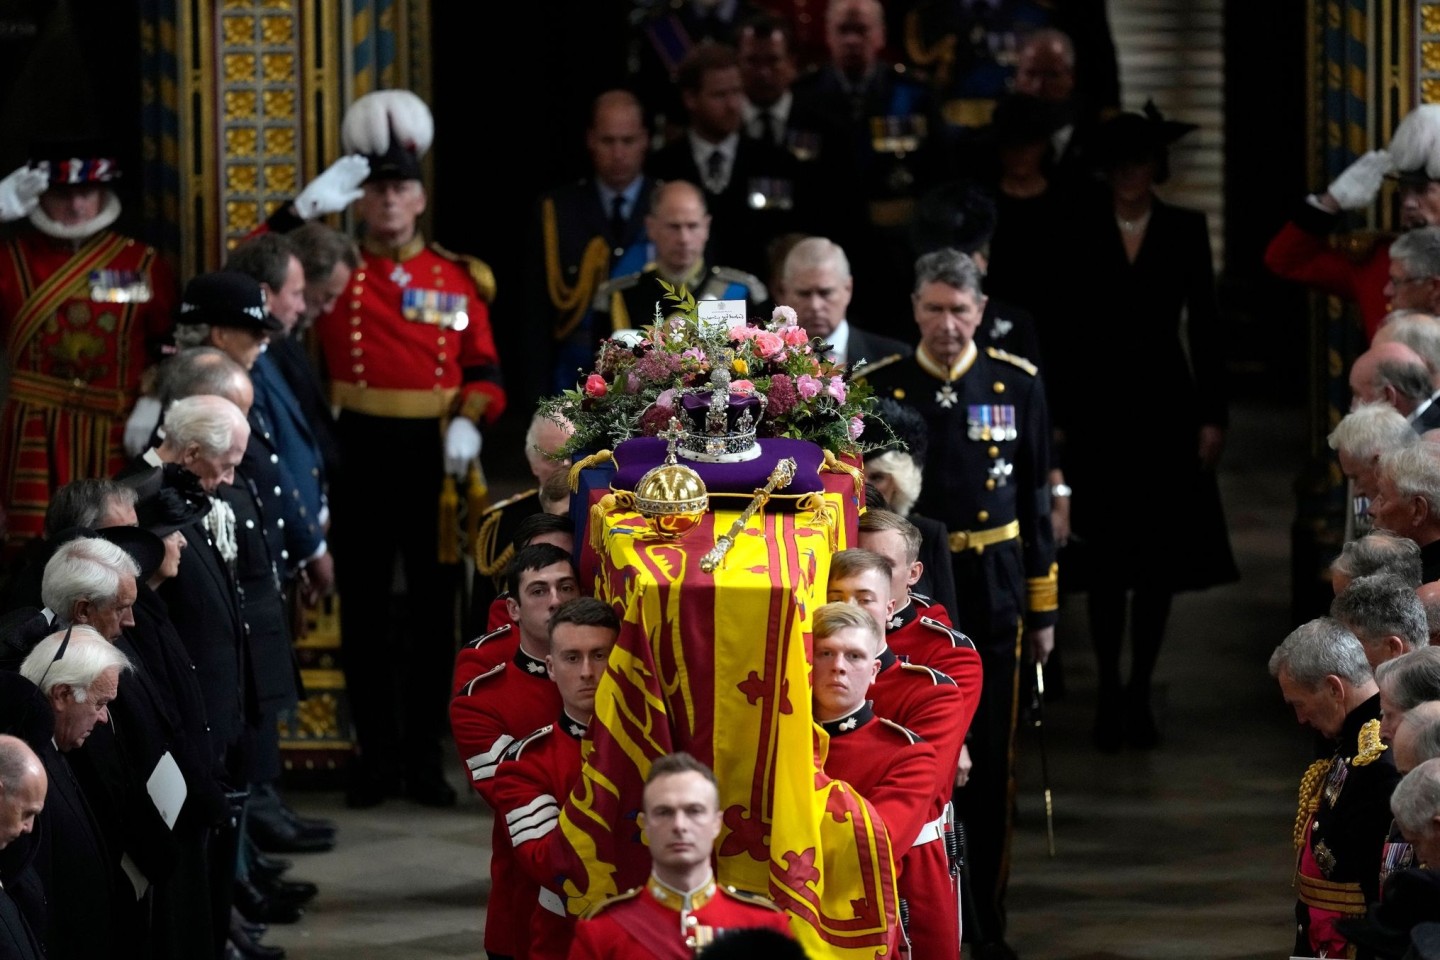 Mitglieder der königlichen Familie folgen dem Sarg von Königin Elizabeth II., der von mehreren Männern getragen wird.